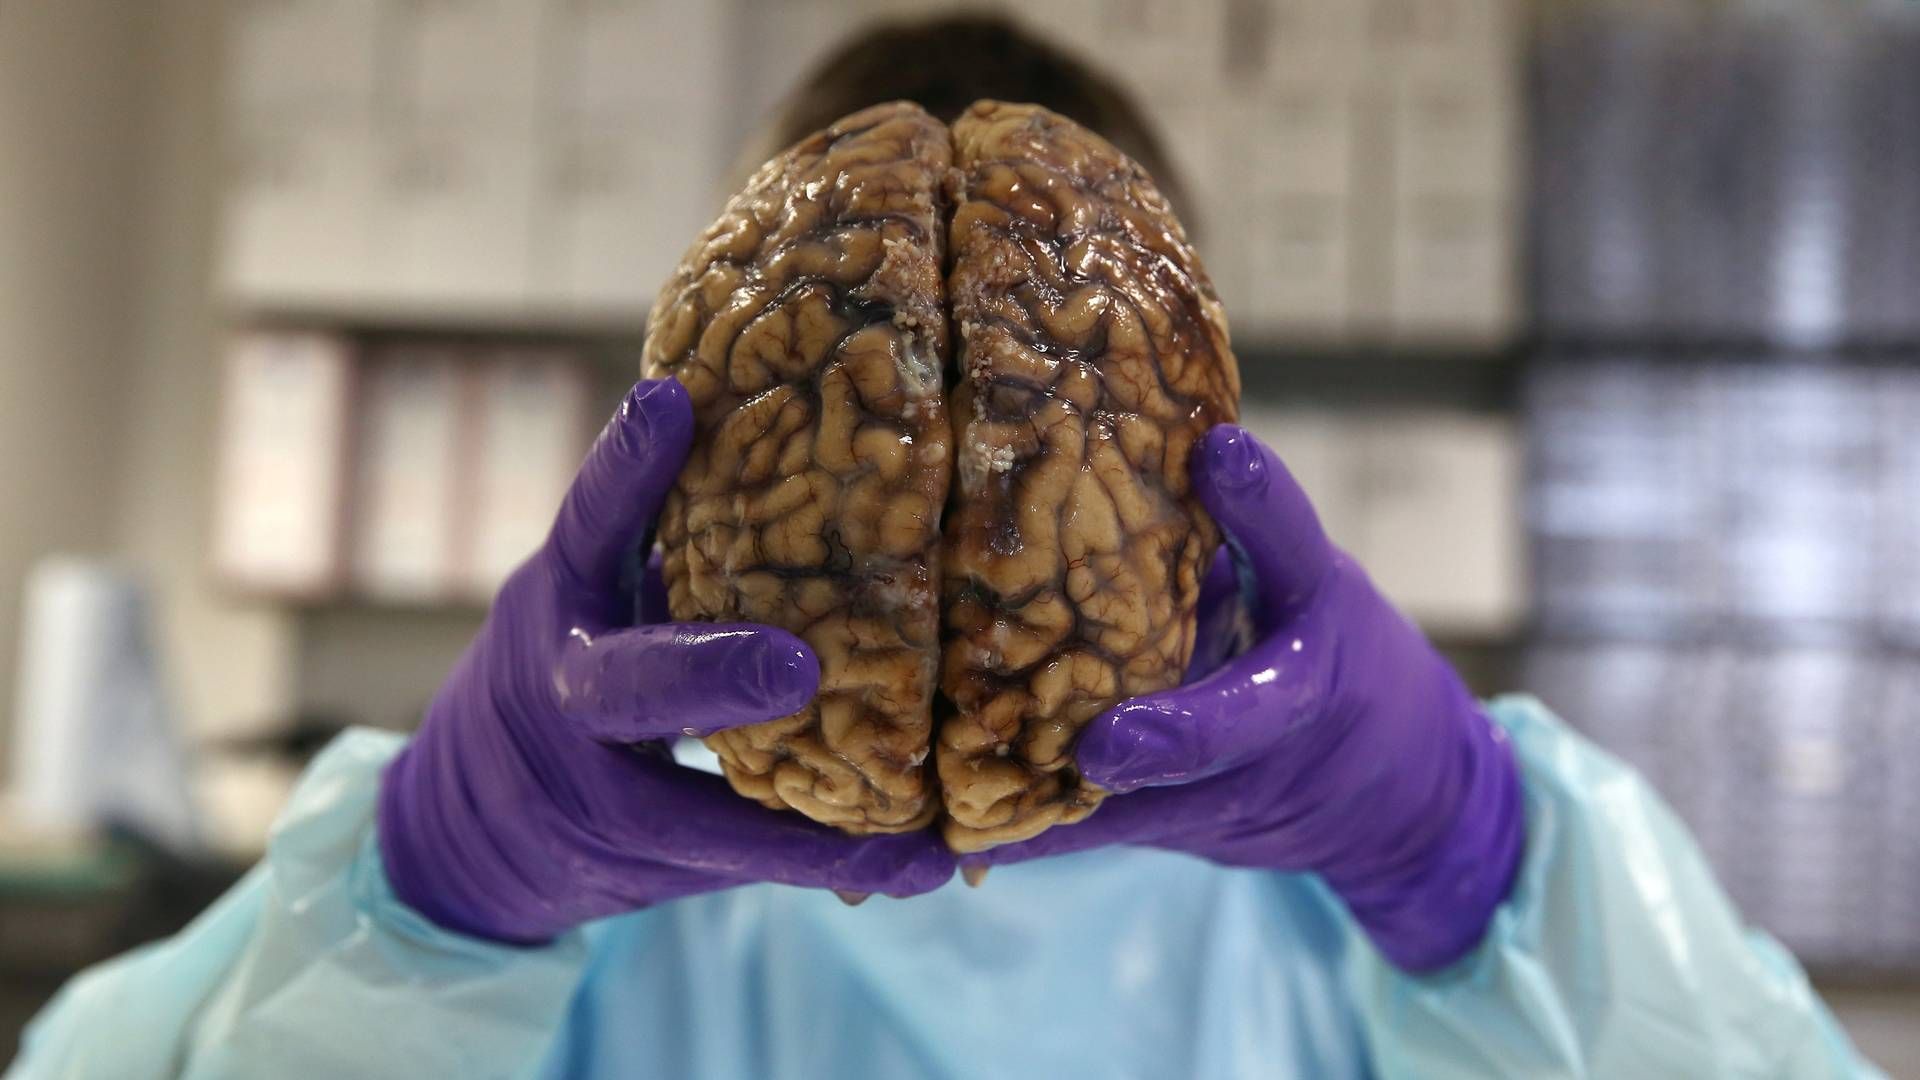 Parkinsons sygdom udvikles som resultat af en gradvis ødelæggelse af hjerneceller i et lille område i hjernen. | Foto: Neil Hall/Reuters/Ritzau Scanpix